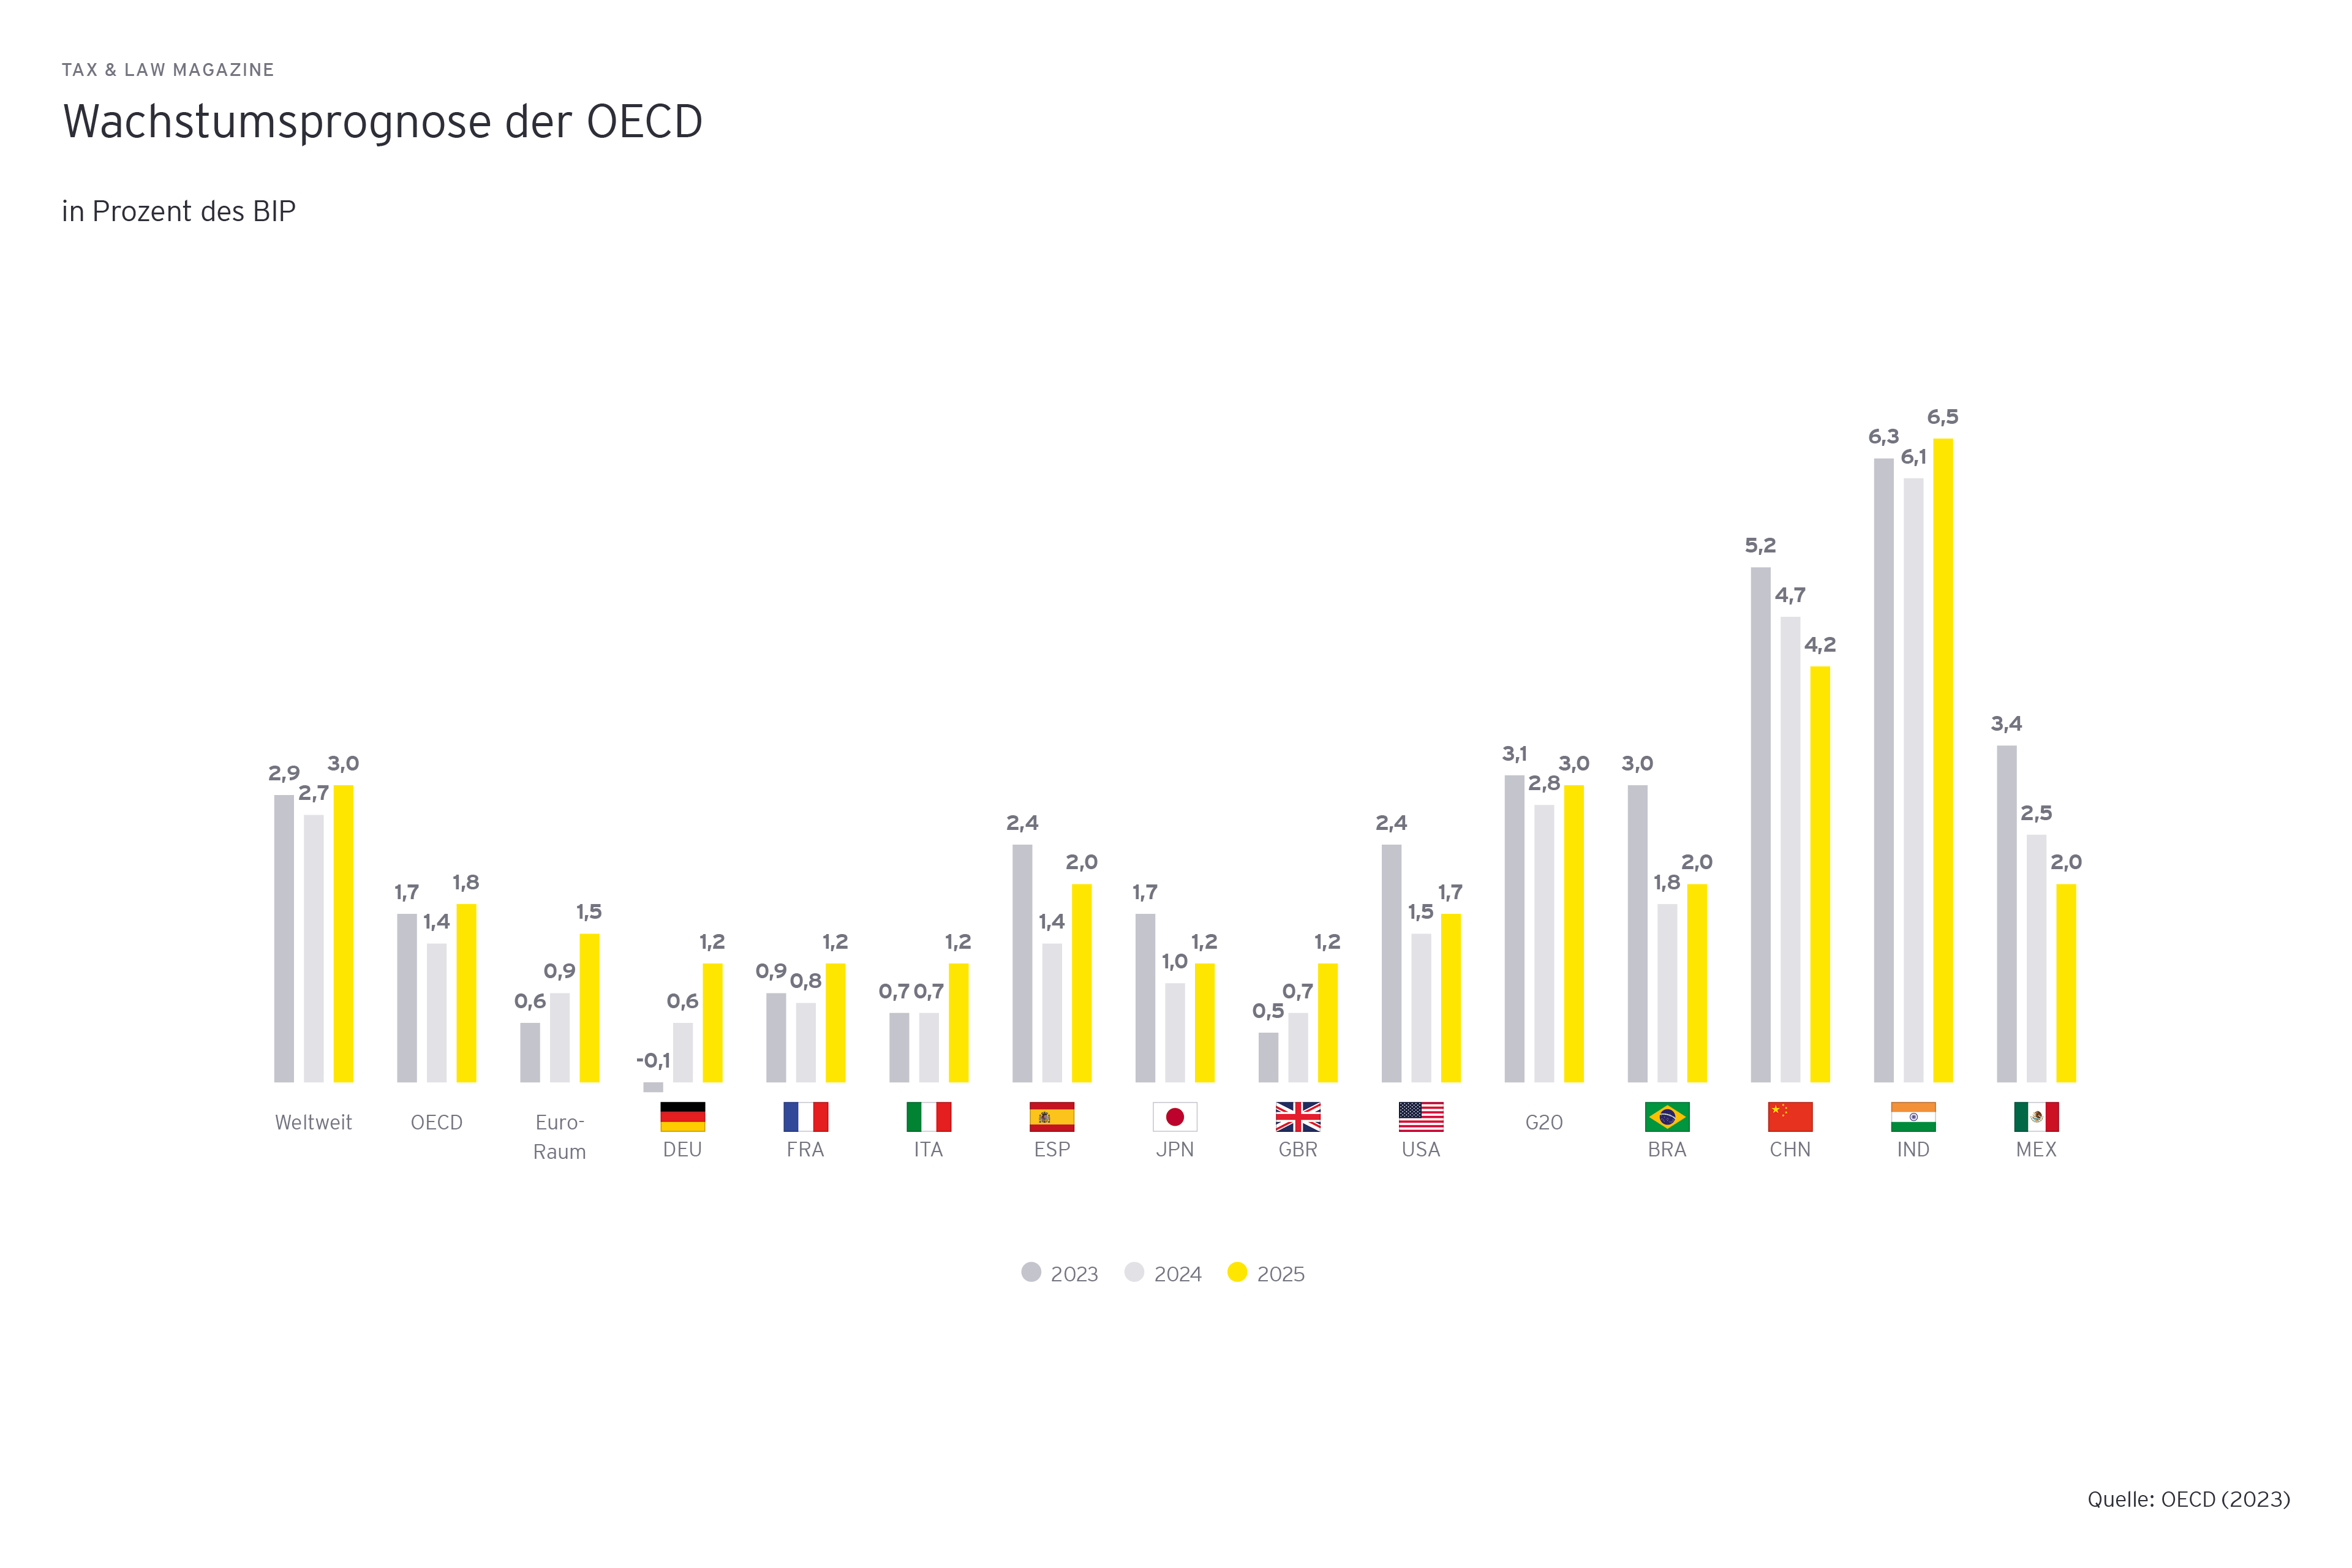 Wachstumsprognose der OECD in Prozent des BIP